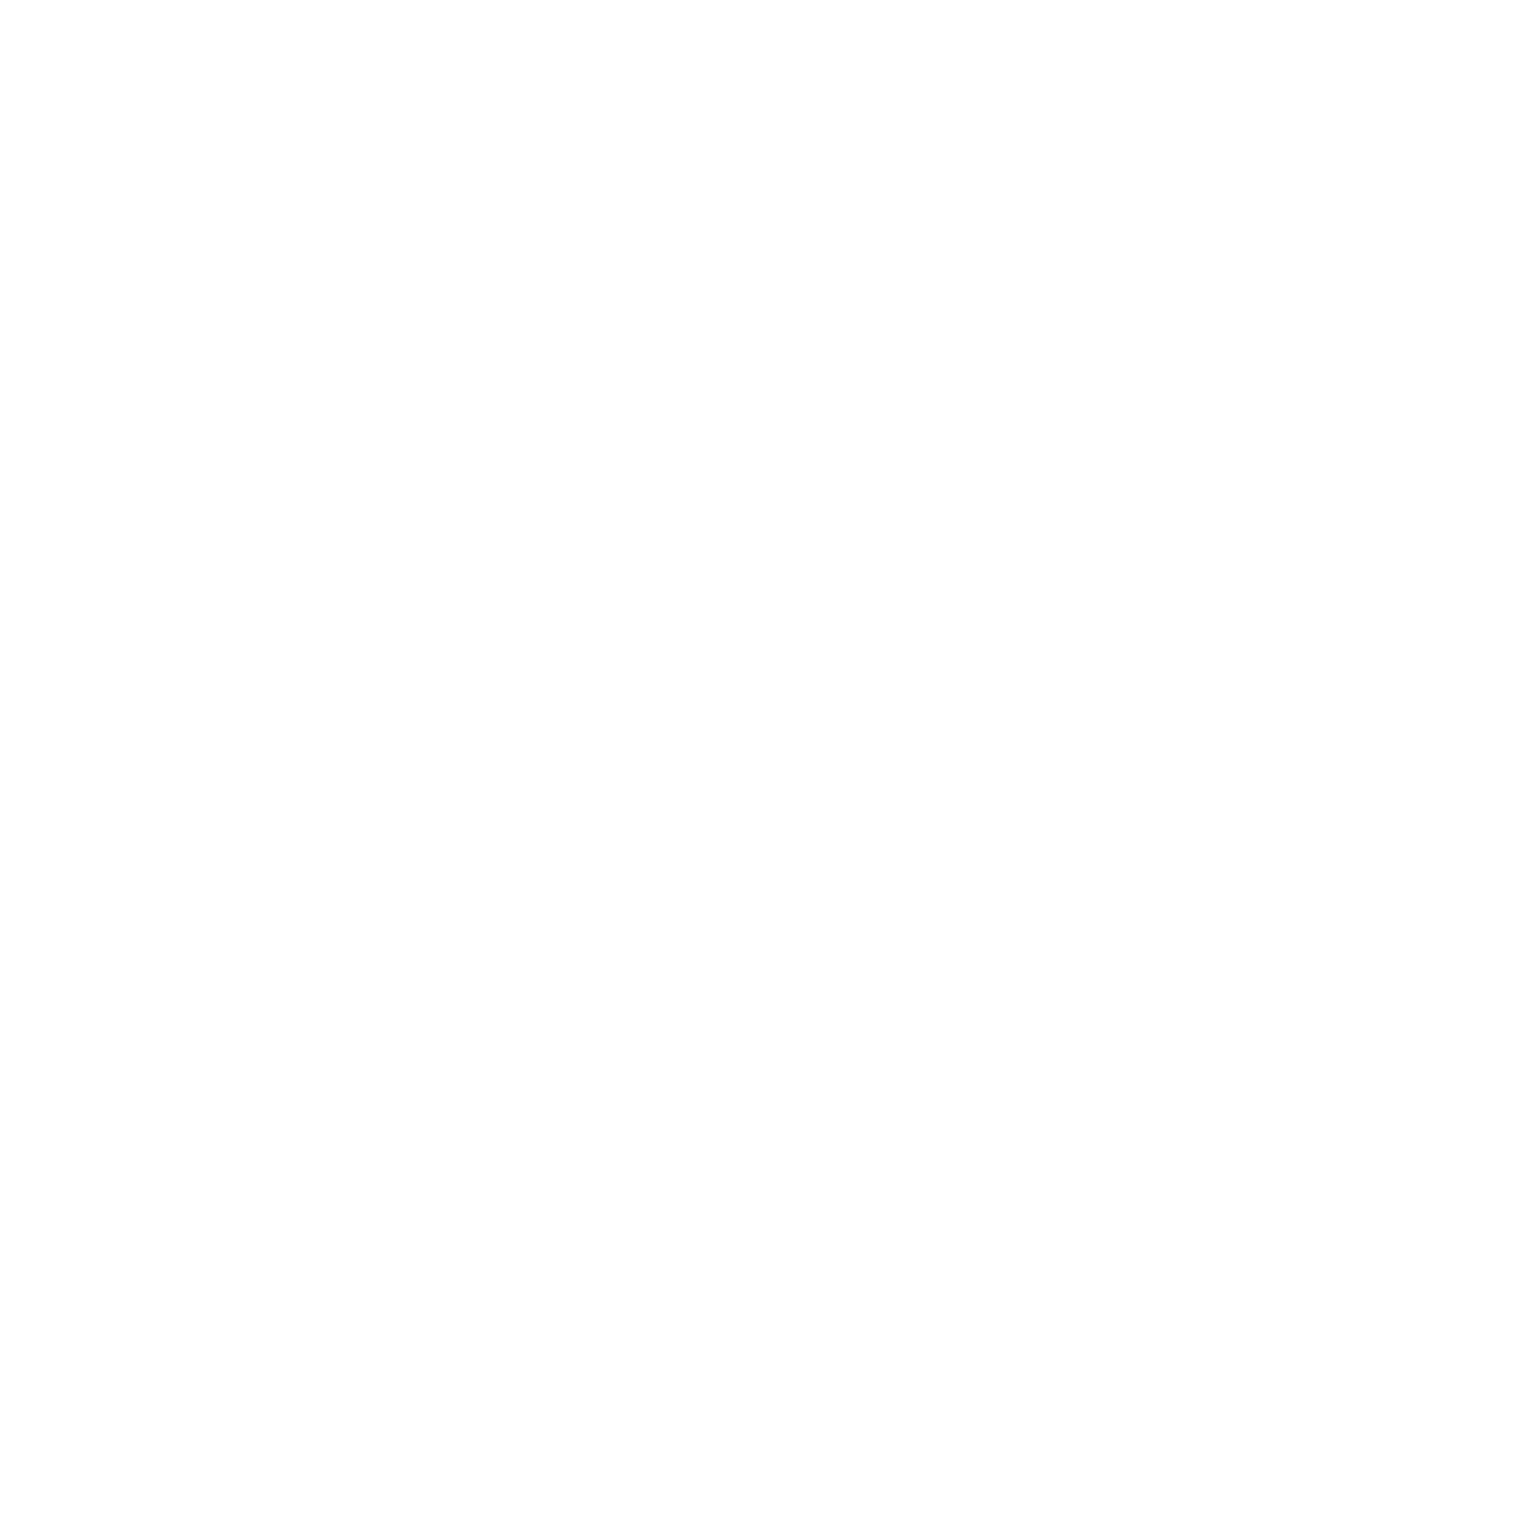 QinetiQ logo for dark backgrounds (transparent PNG)